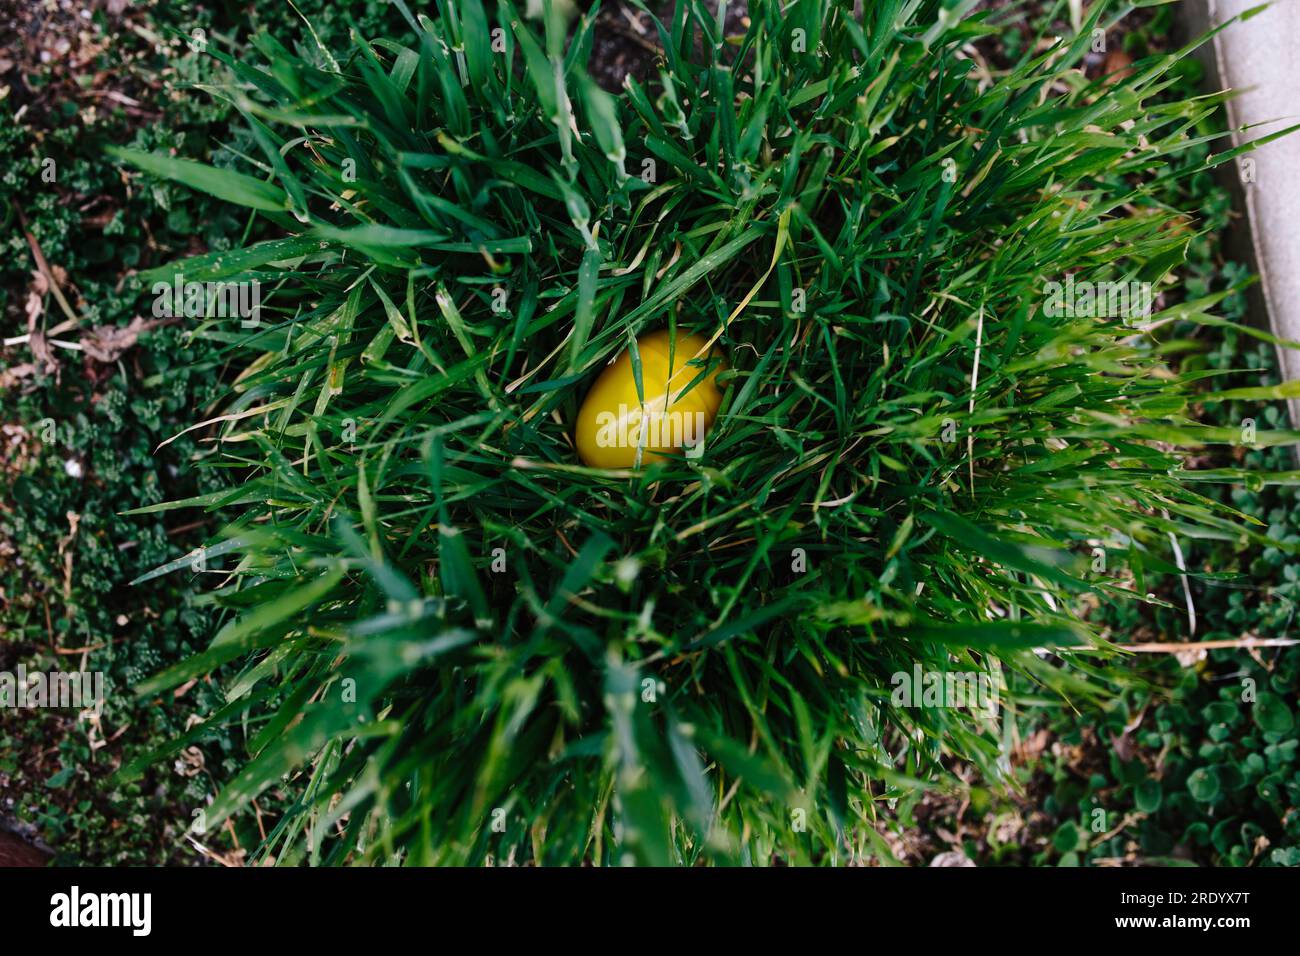 Ein gelbes osterei aus Plastik, eingebettet in ein Büschel grüner Gras Stockfoto